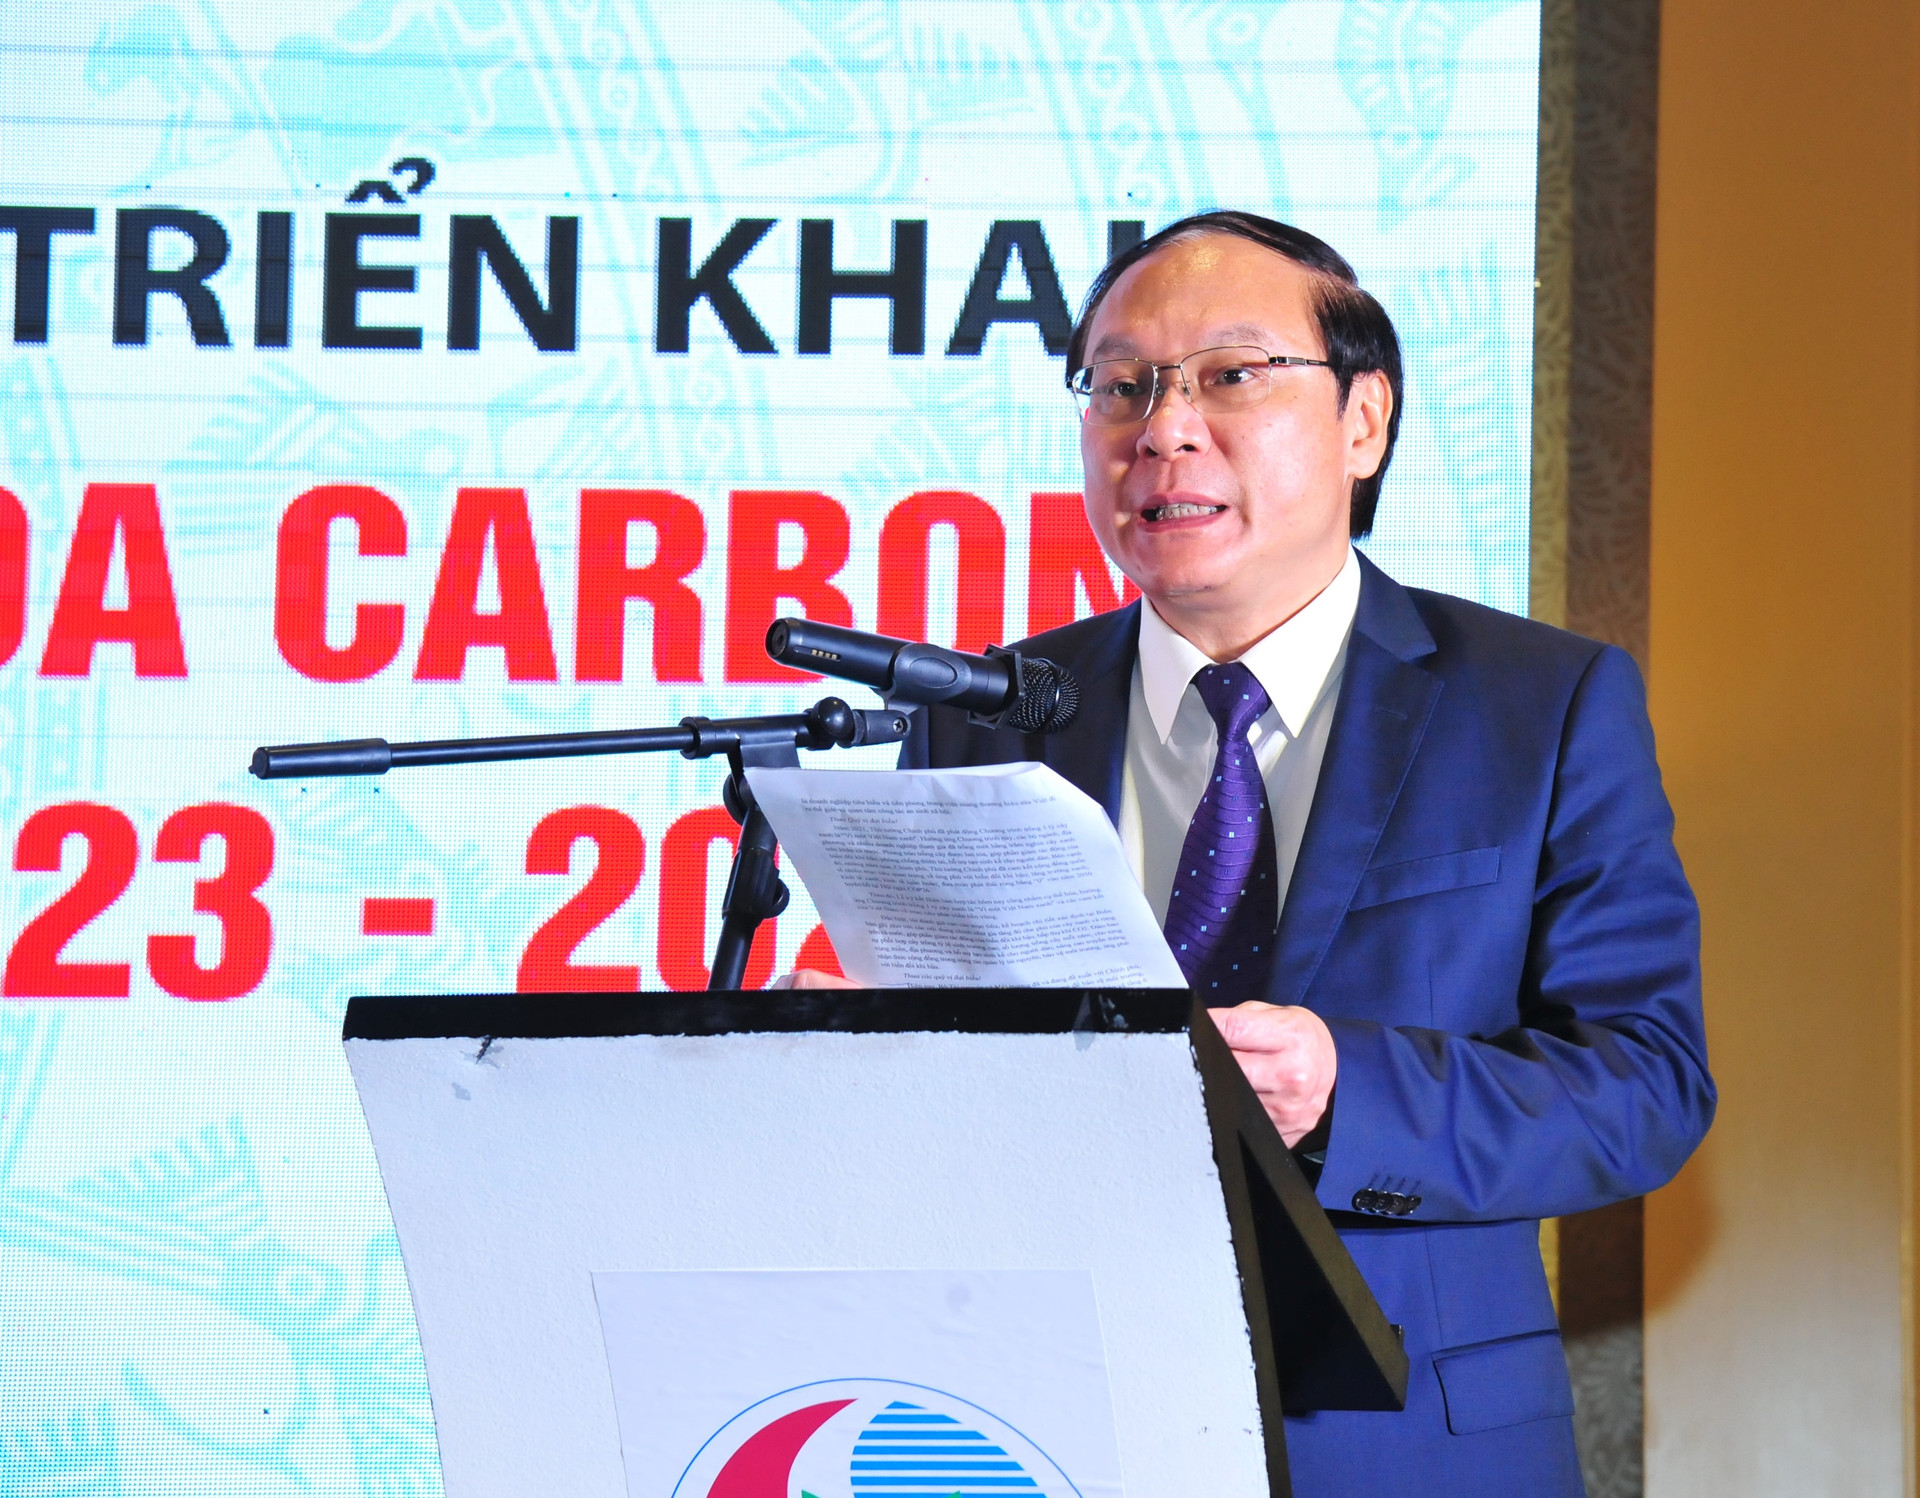 Báo TN&MT - Công ty CP Sữa Việt Nam Vinamilk: Ký kết Biên bản ghi nhớ hợp tác trồng cây để trung hòa Carbon hướng đến Net Zero giai đoạn 2023 – 2027